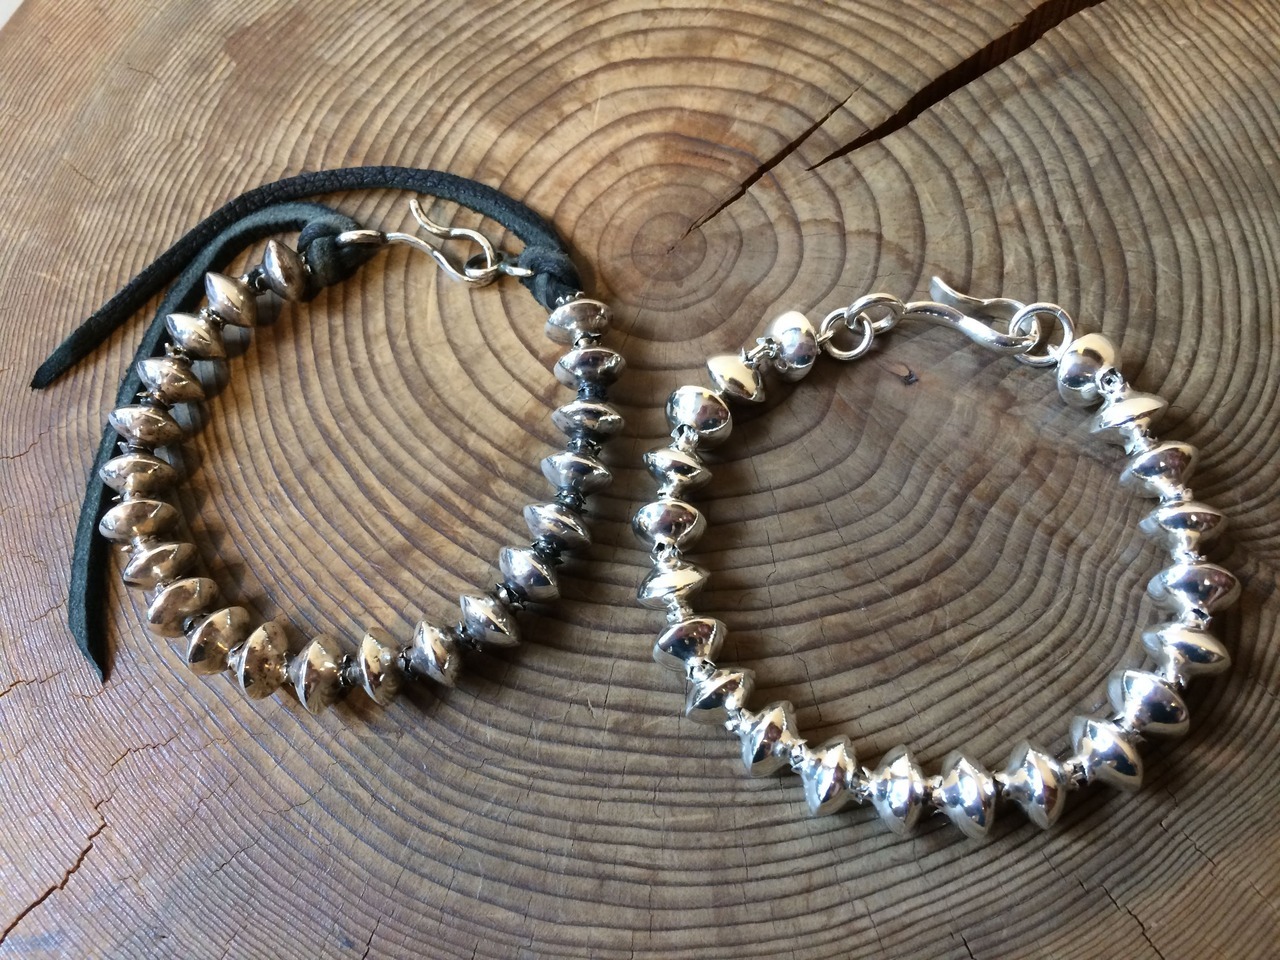 杉中工房 - 商品名: Beads Bracelet 大 長さ: 22cm 通常仕上げ